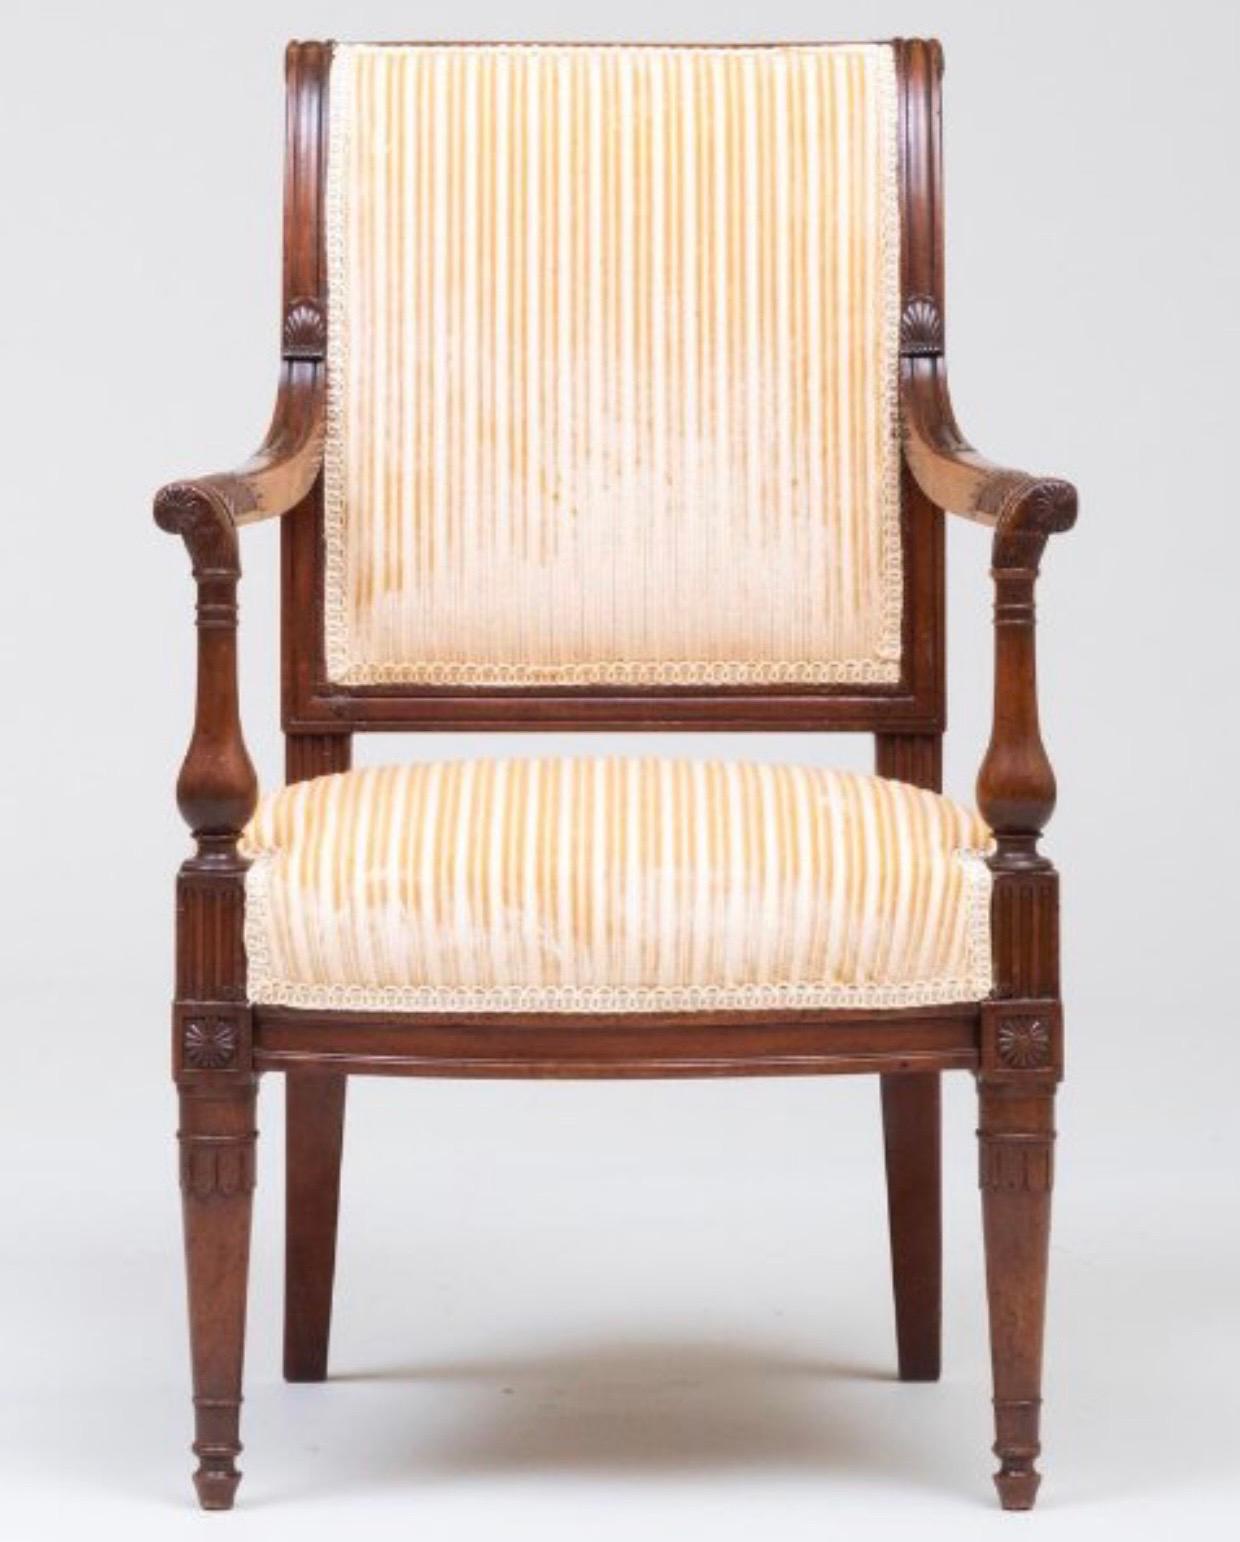 Der zierliche Sessel weist alters- und gebrauchsbedingte Gebrauchsspuren auf.
 